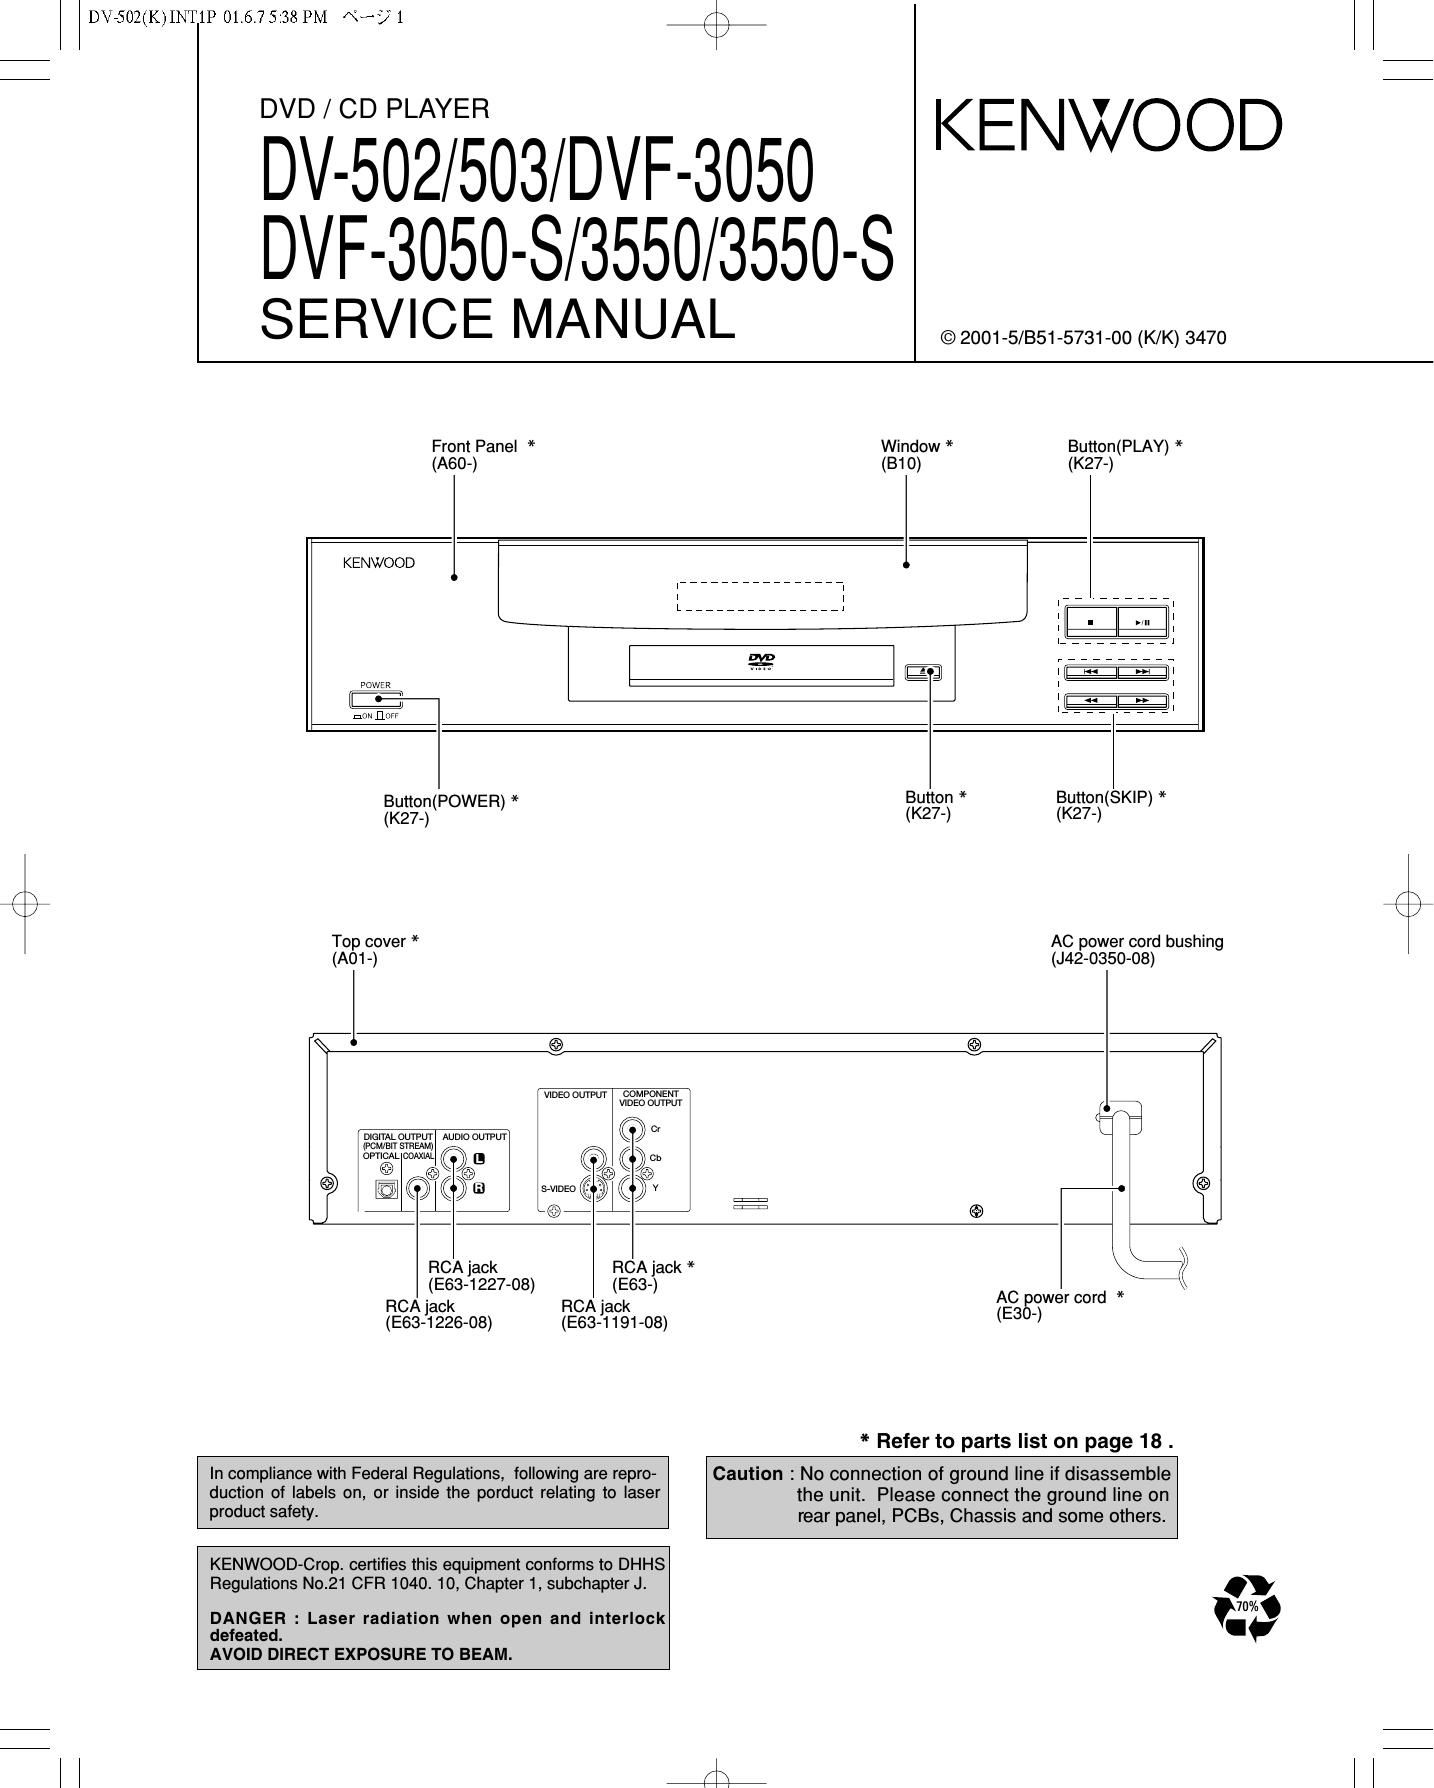 Kenwood DV 503 Service Manual